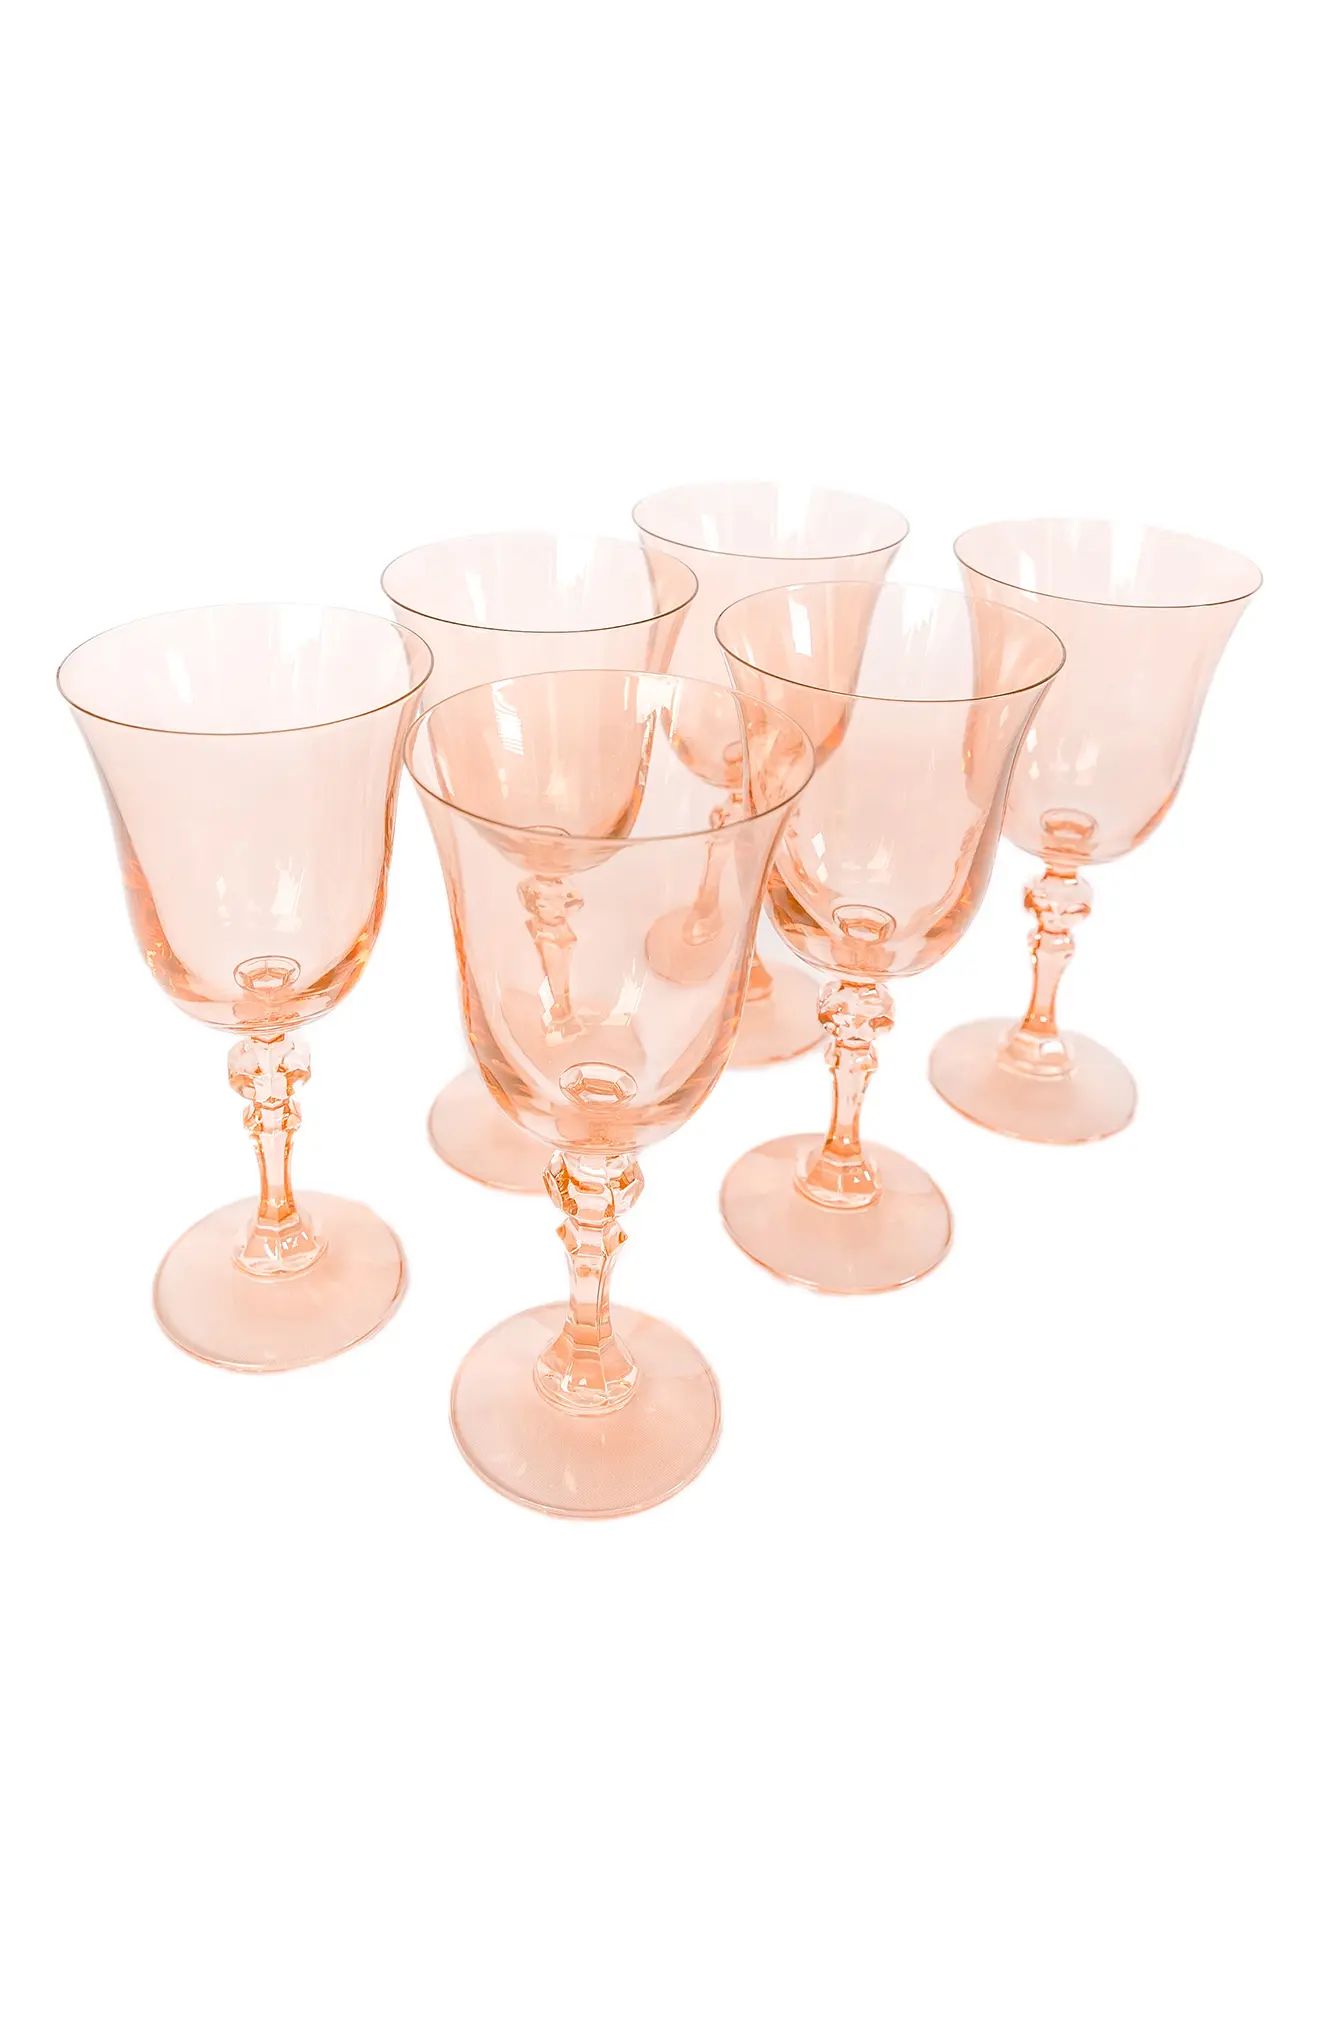 Estelle Colored Glass Set of 6 Regal Goblets in Blush Pink at Nordstrom | Nordstrom